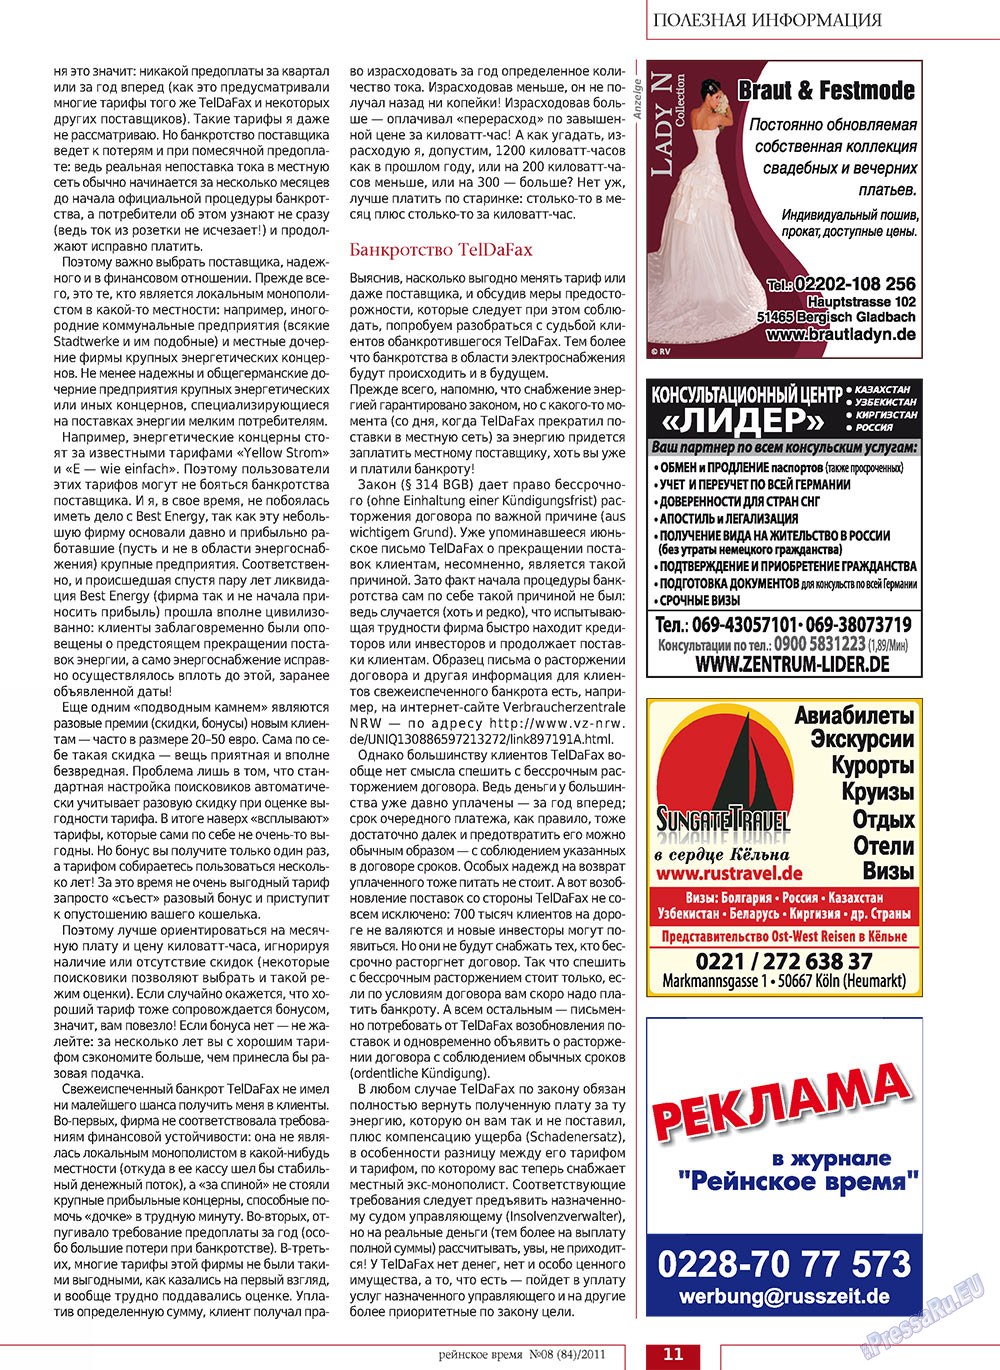 Rejnskoe vremja (Zeitschrift). 2011 Jahr, Ausgabe 8, Seite 11